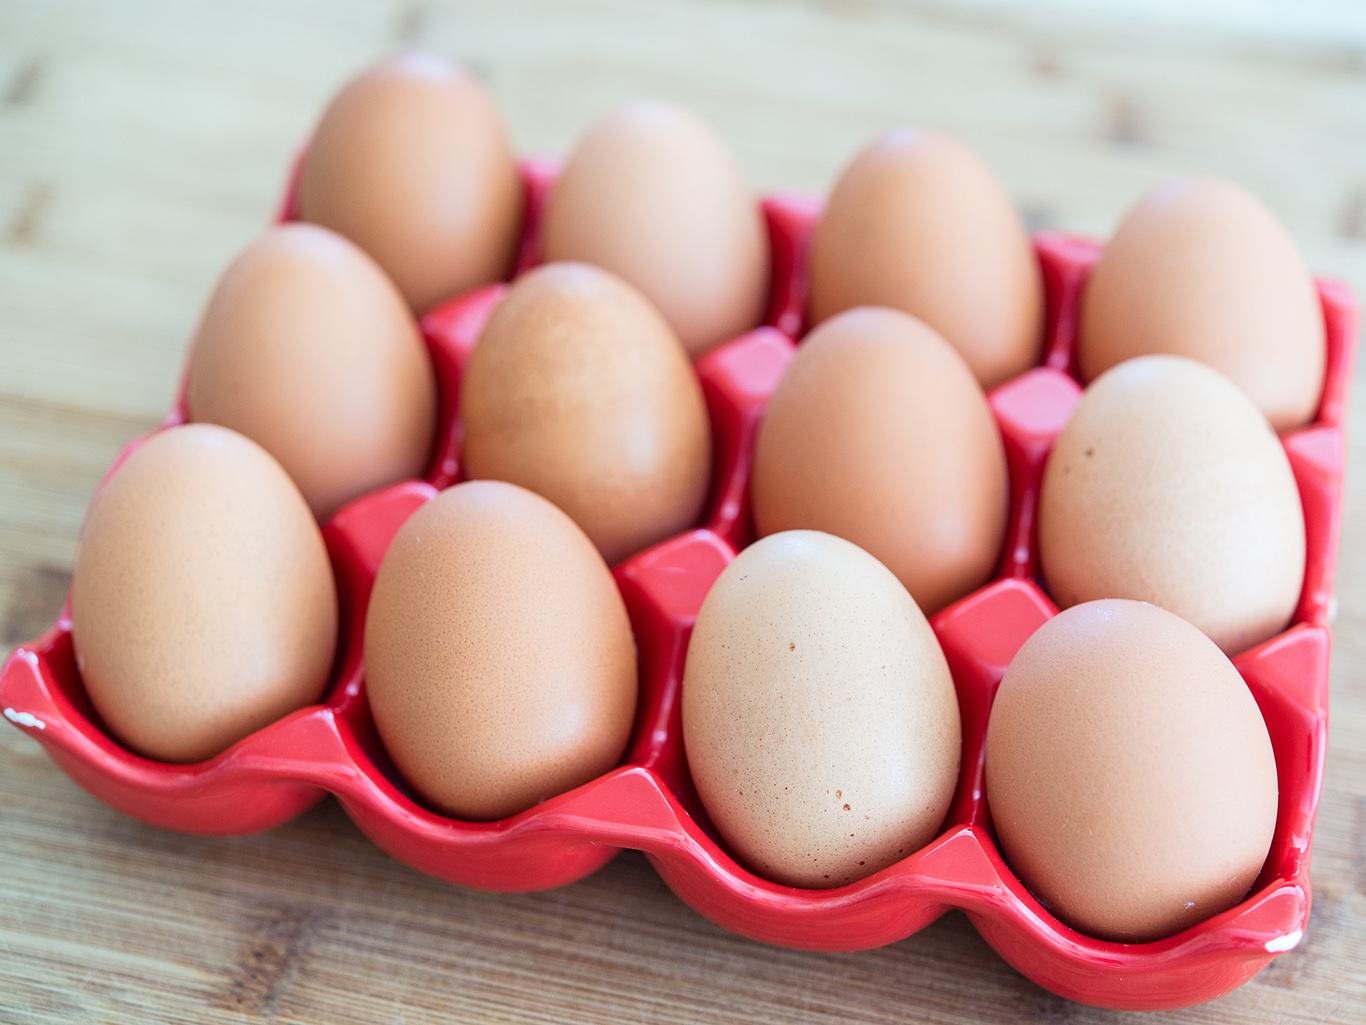 Обратите внимание на то, что сырые яйца не рекомендованы ни людям, ни живот...